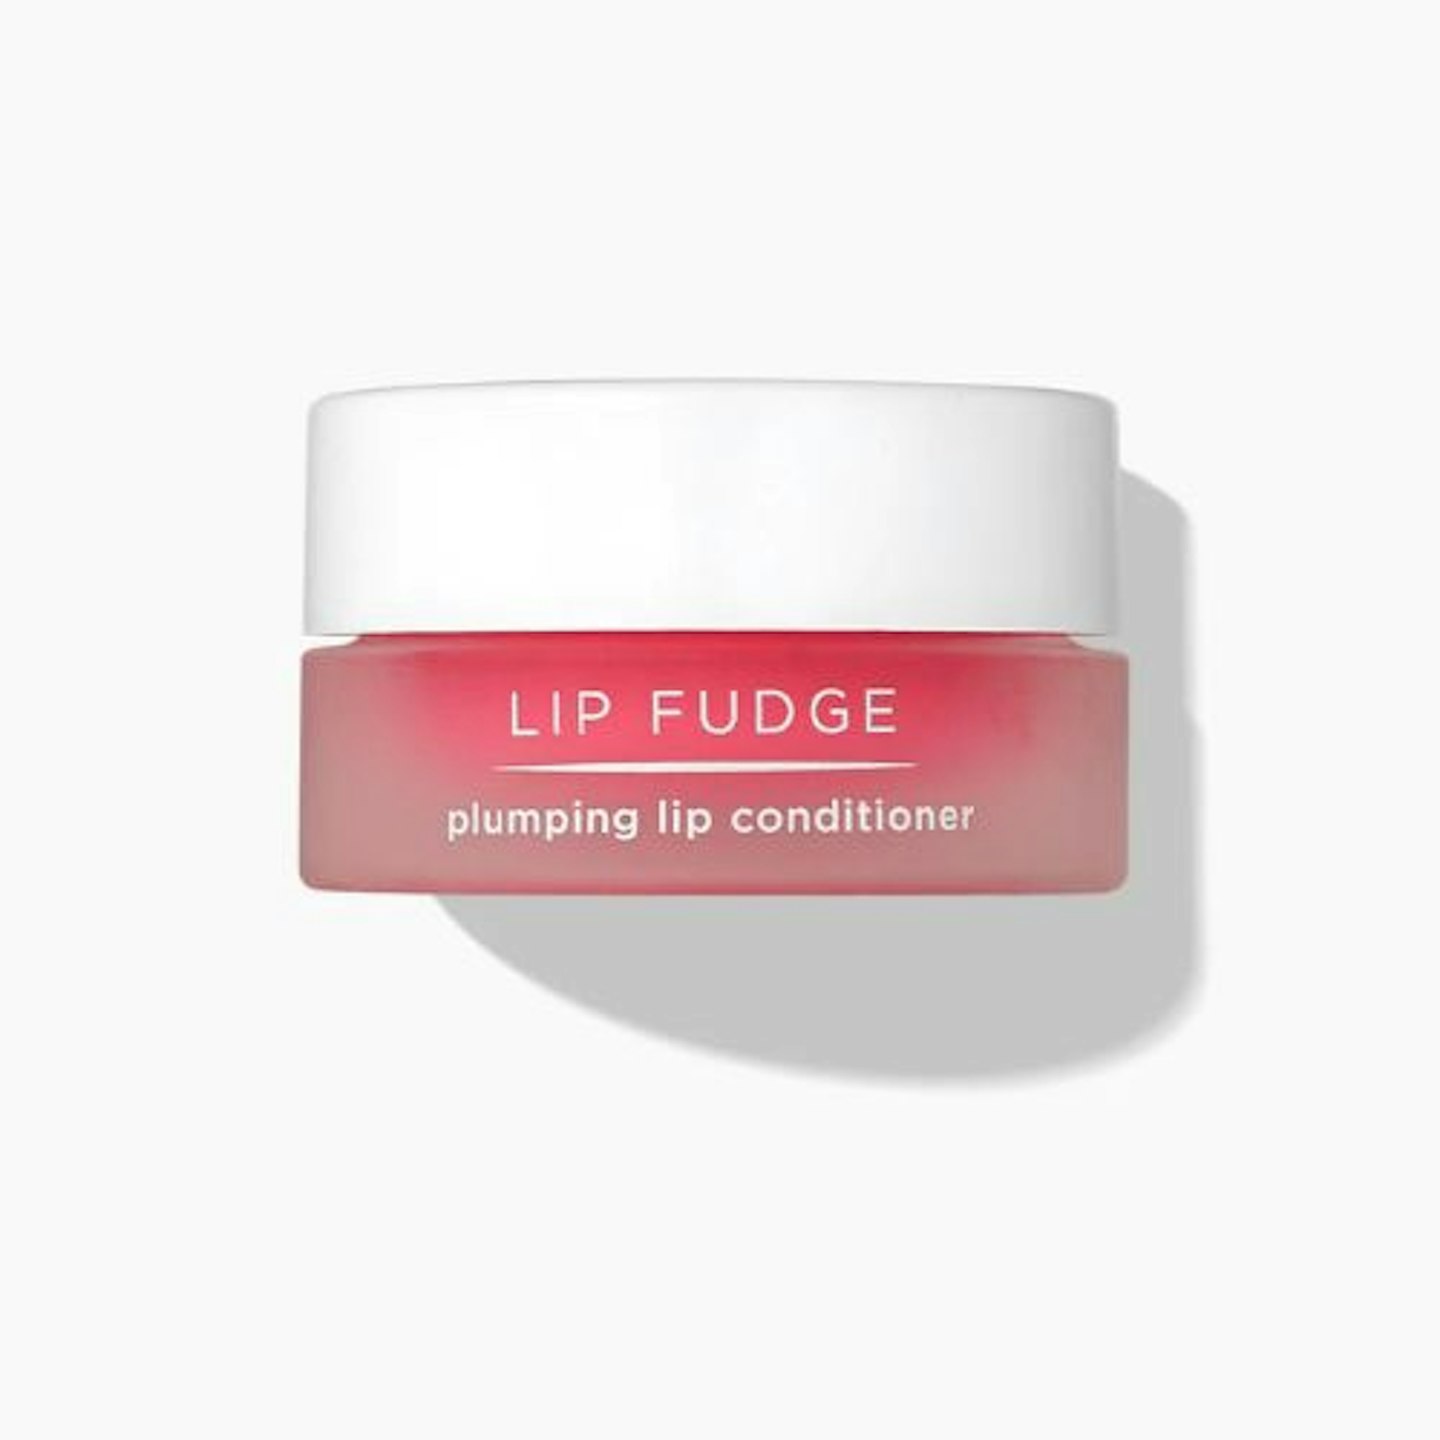 Lip Fudge Plumping Lip Conditioner